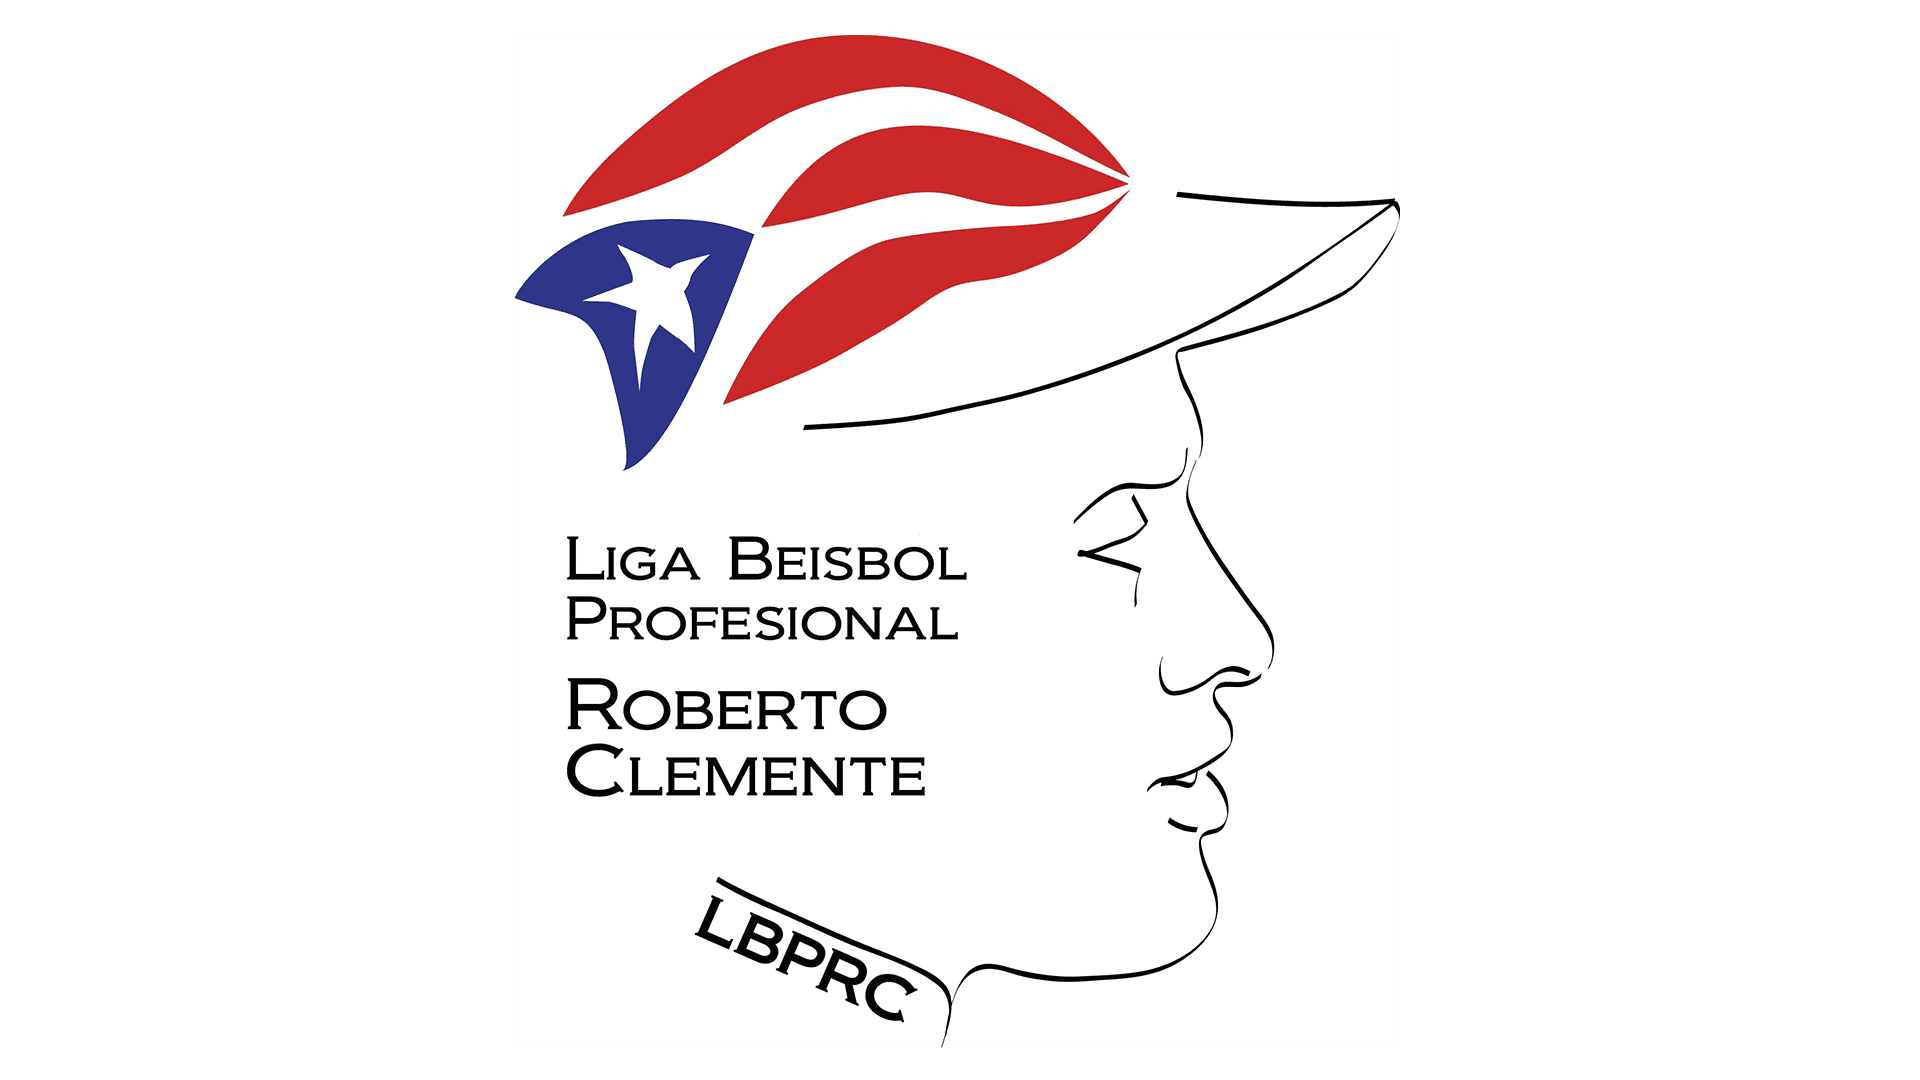 Liga de Béisbol Profesional Roberto Clemente - Wikipedia